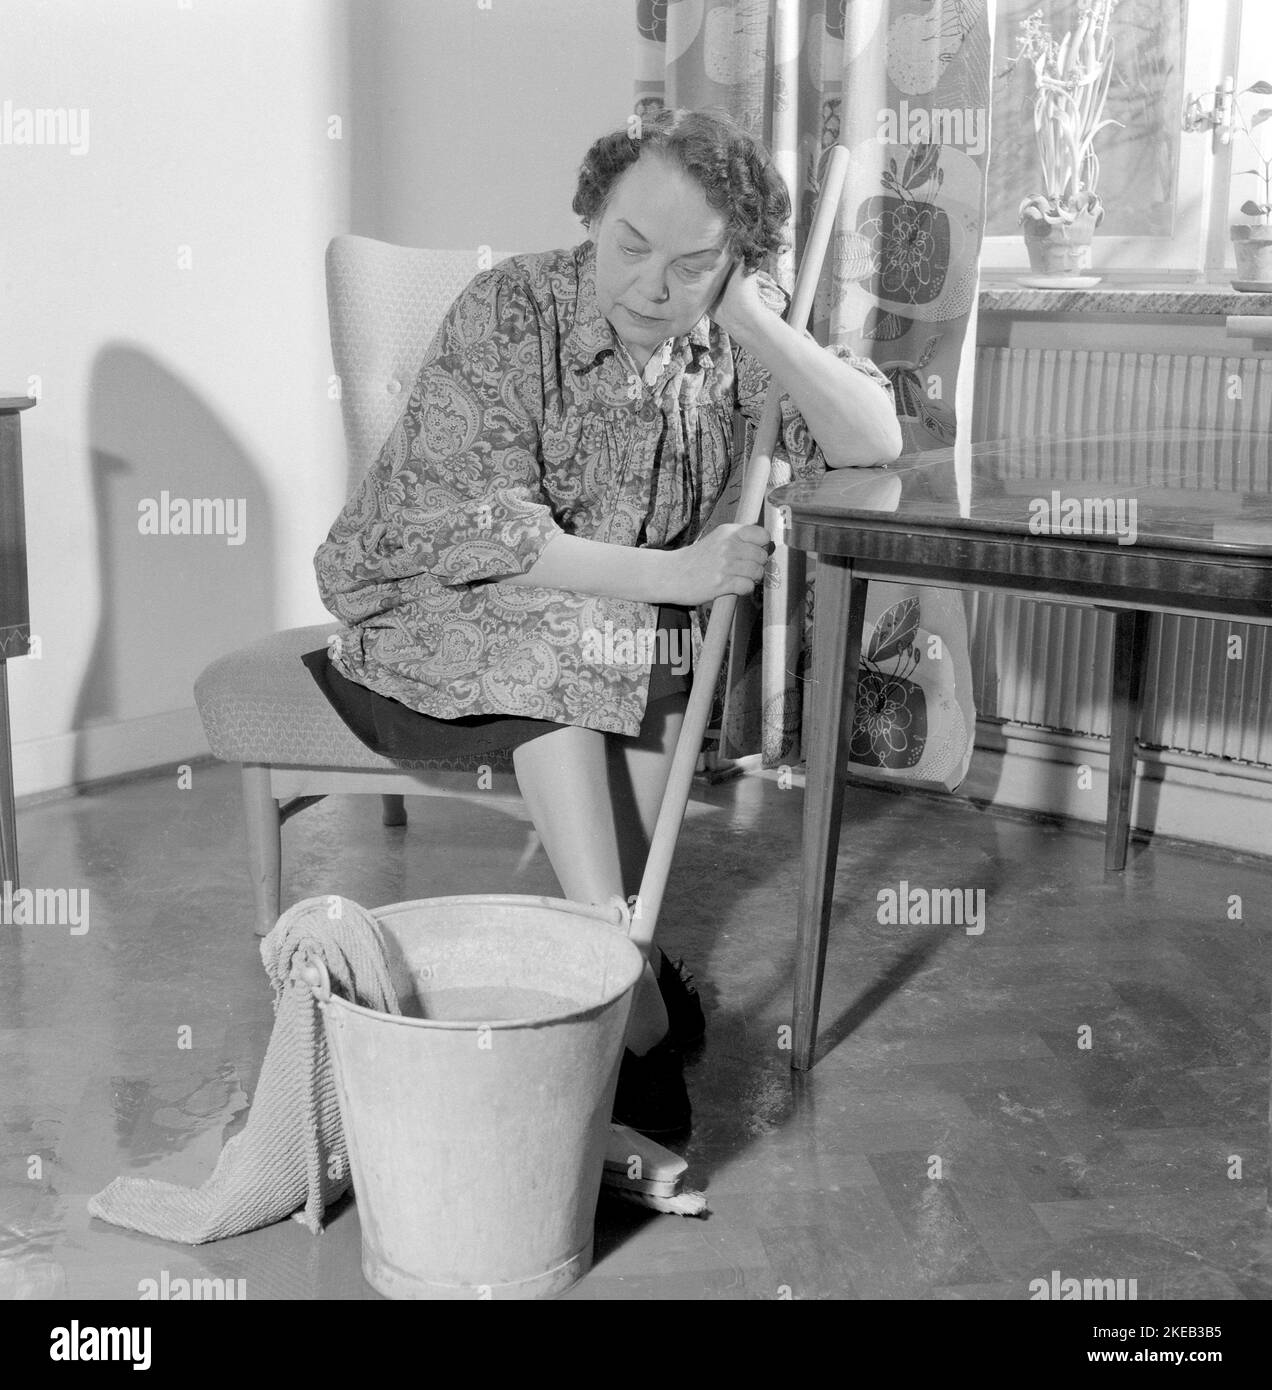 Reinigen des Bodens damals. Eine Frau sieht sehr müde und abgenutzt aus, wenn sie auf einem Stuhl sitzt und sich bei der Reinigung des Fußbodens ausruht. Schweden 1956 Conard Ref. 3160 Stockfoto